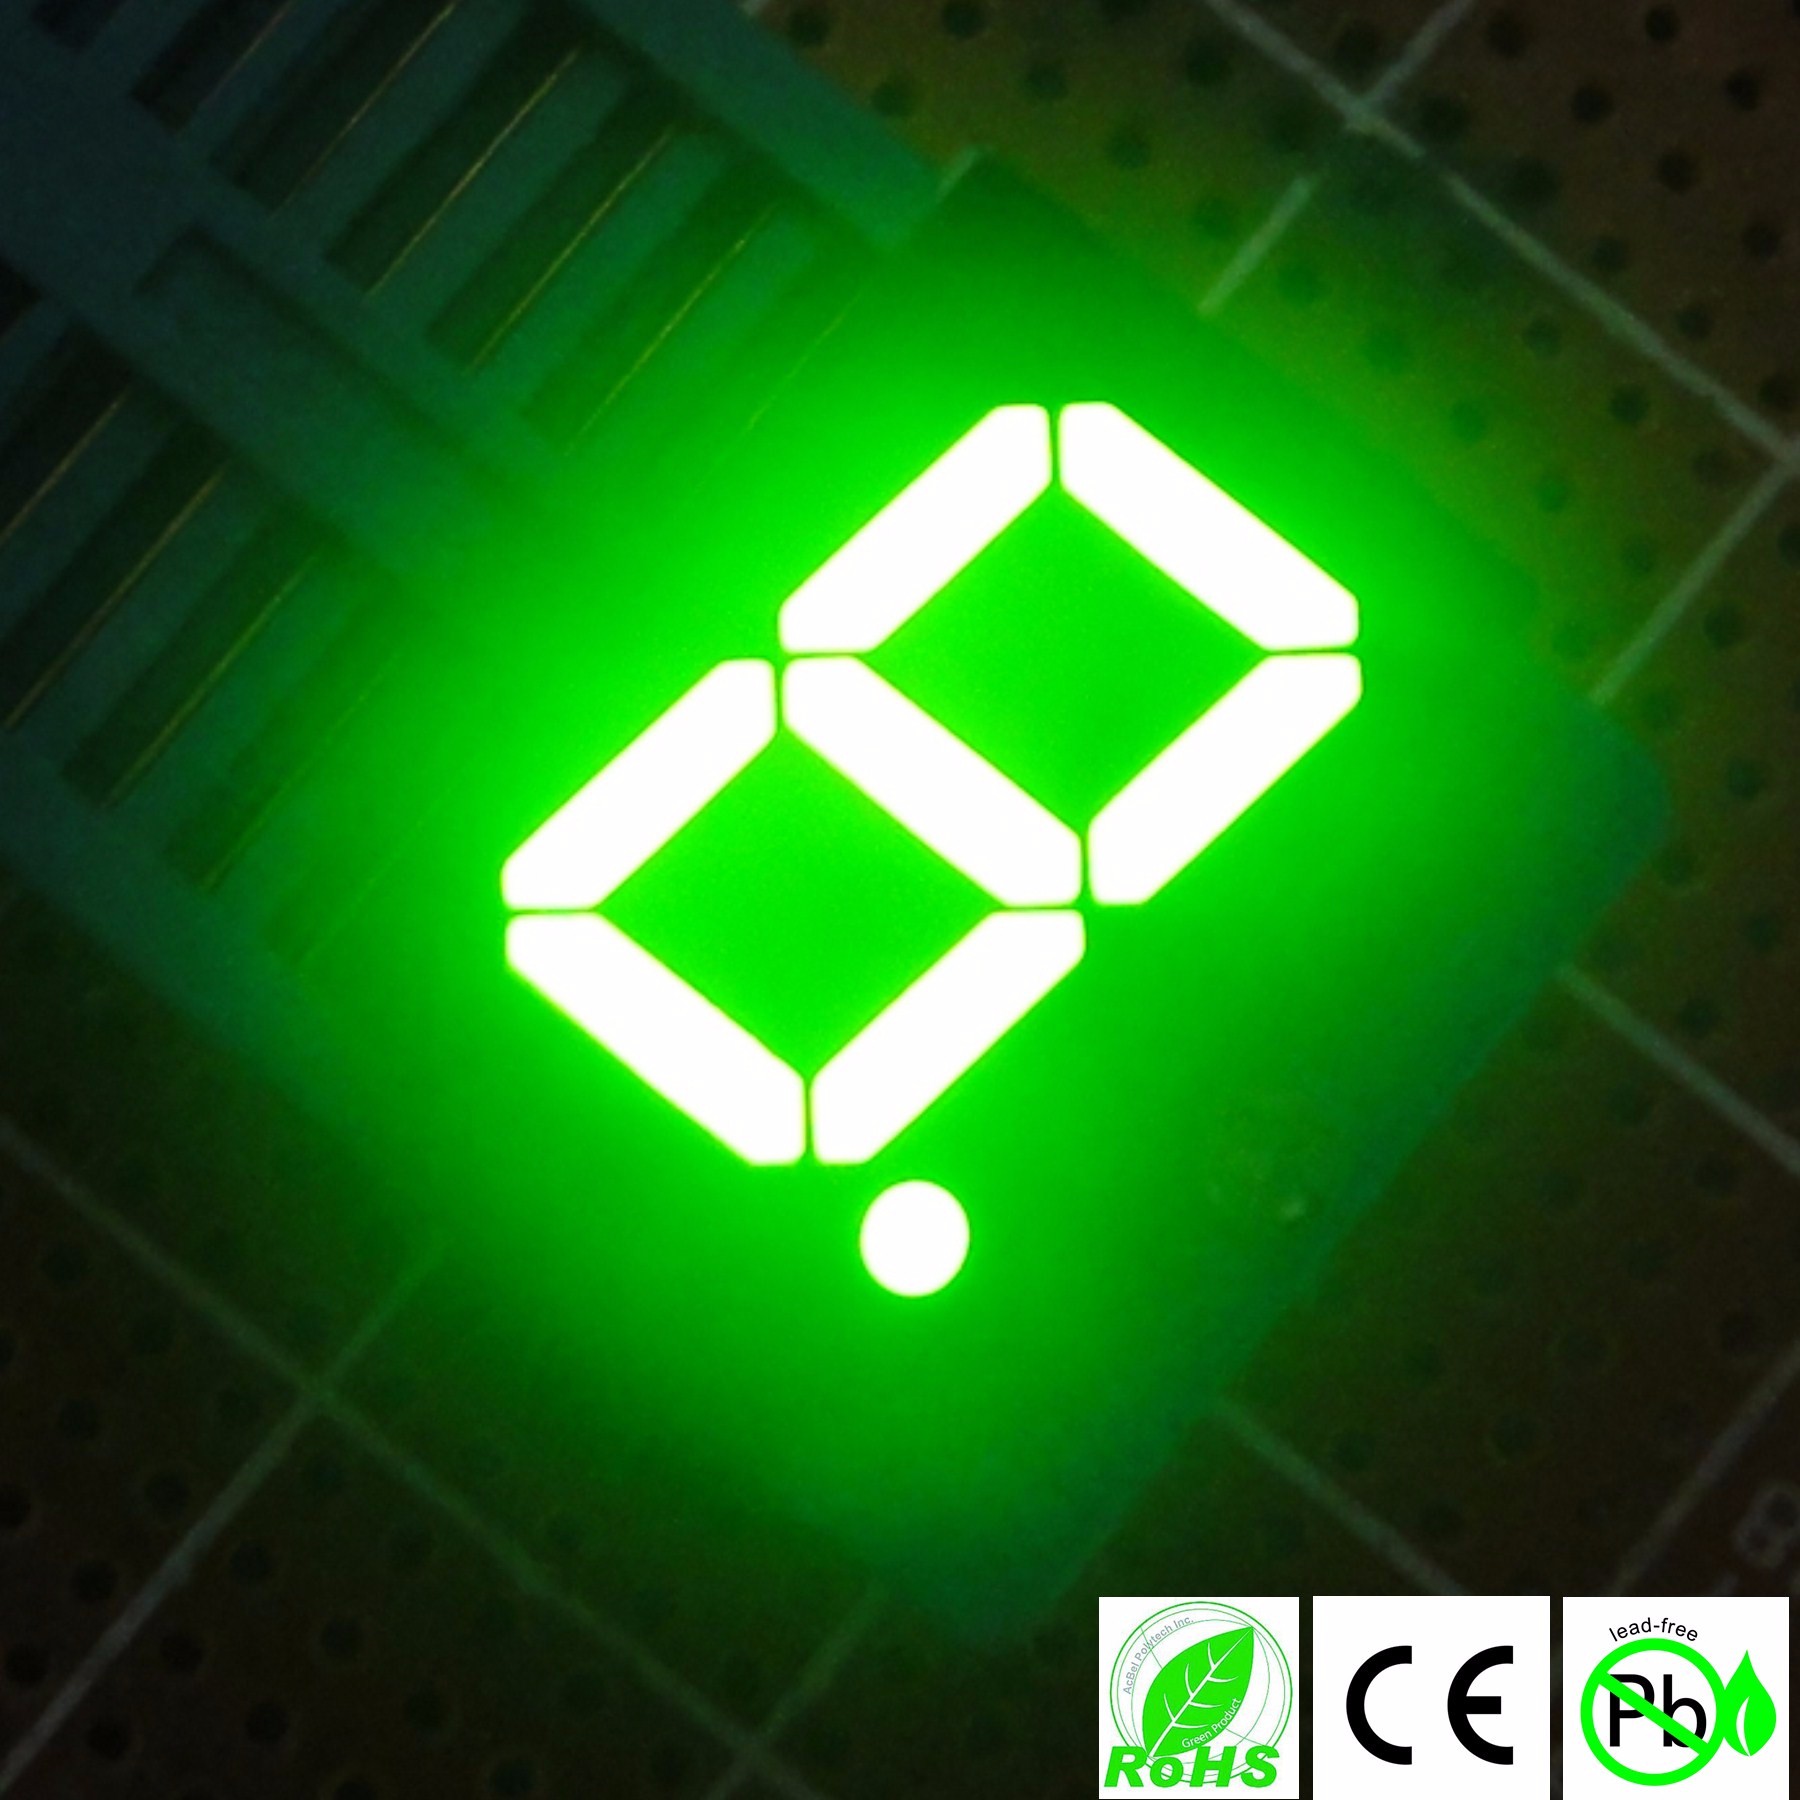 Comprar Pantalla LED de 1 dígito y 7 segmentos, Pantalla LED de 1 dígito y 7 segmentos Precios, Pantalla LED de 1 dígito y 7 segmentos Marcas, Pantalla LED de 1 dígito y 7 segmentos Fabricante, Pantalla LED de 1 dígito y 7 segmentos Citas, Pantalla LED de 1 dígito y 7 segmentos Empresa.